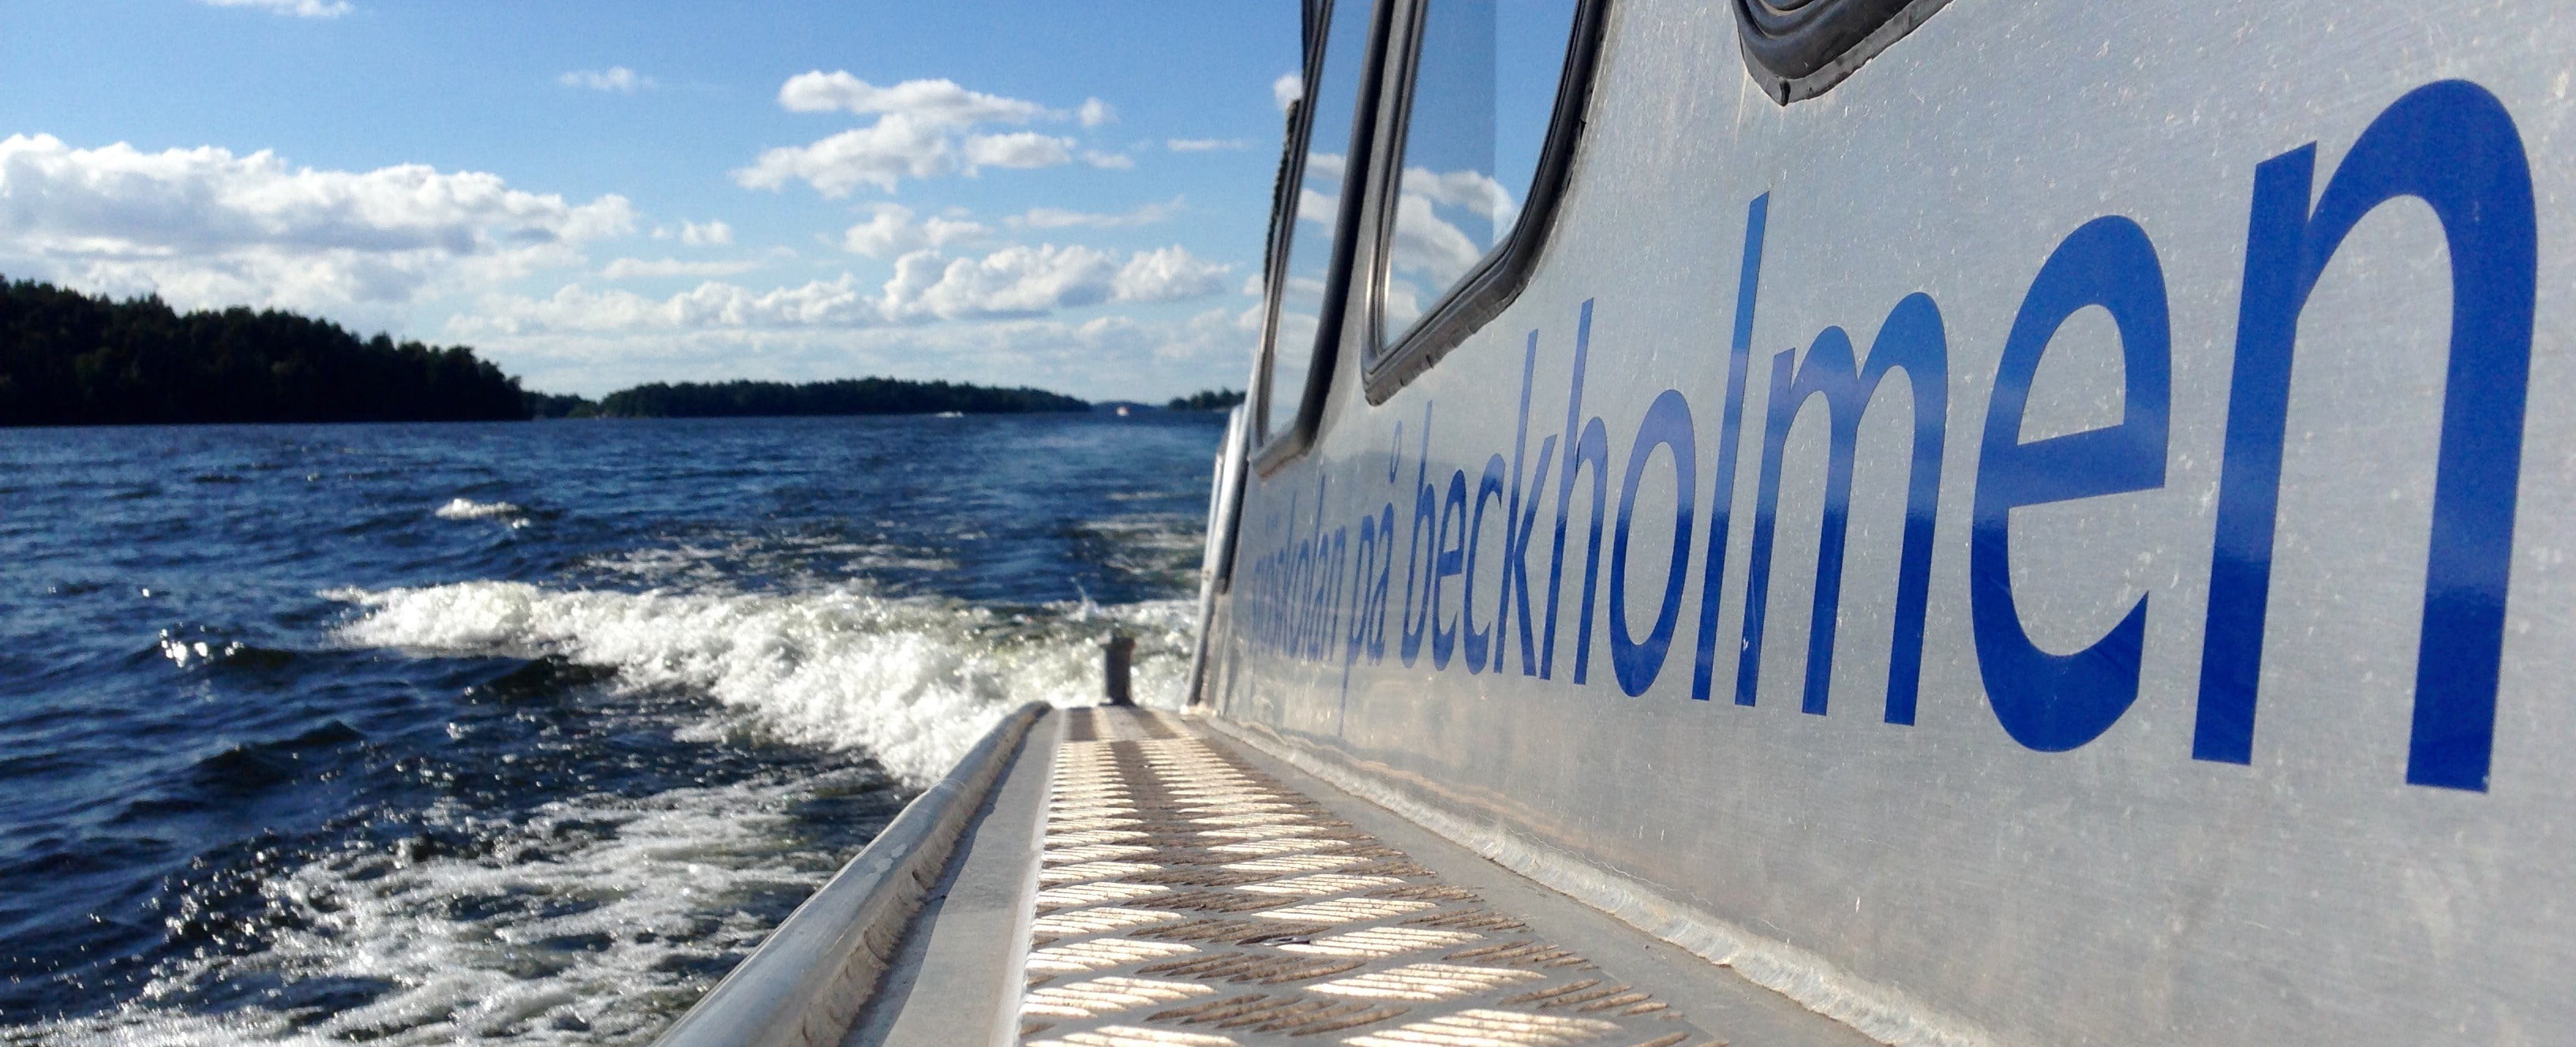 Förarintyg båt Stockholm